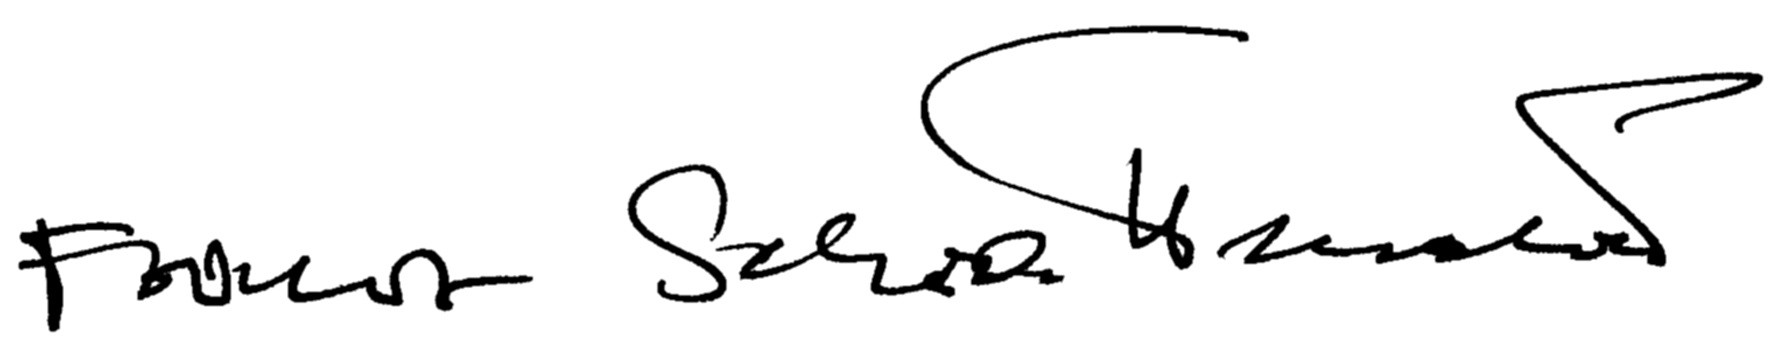 Unterschrift_RZ (1)